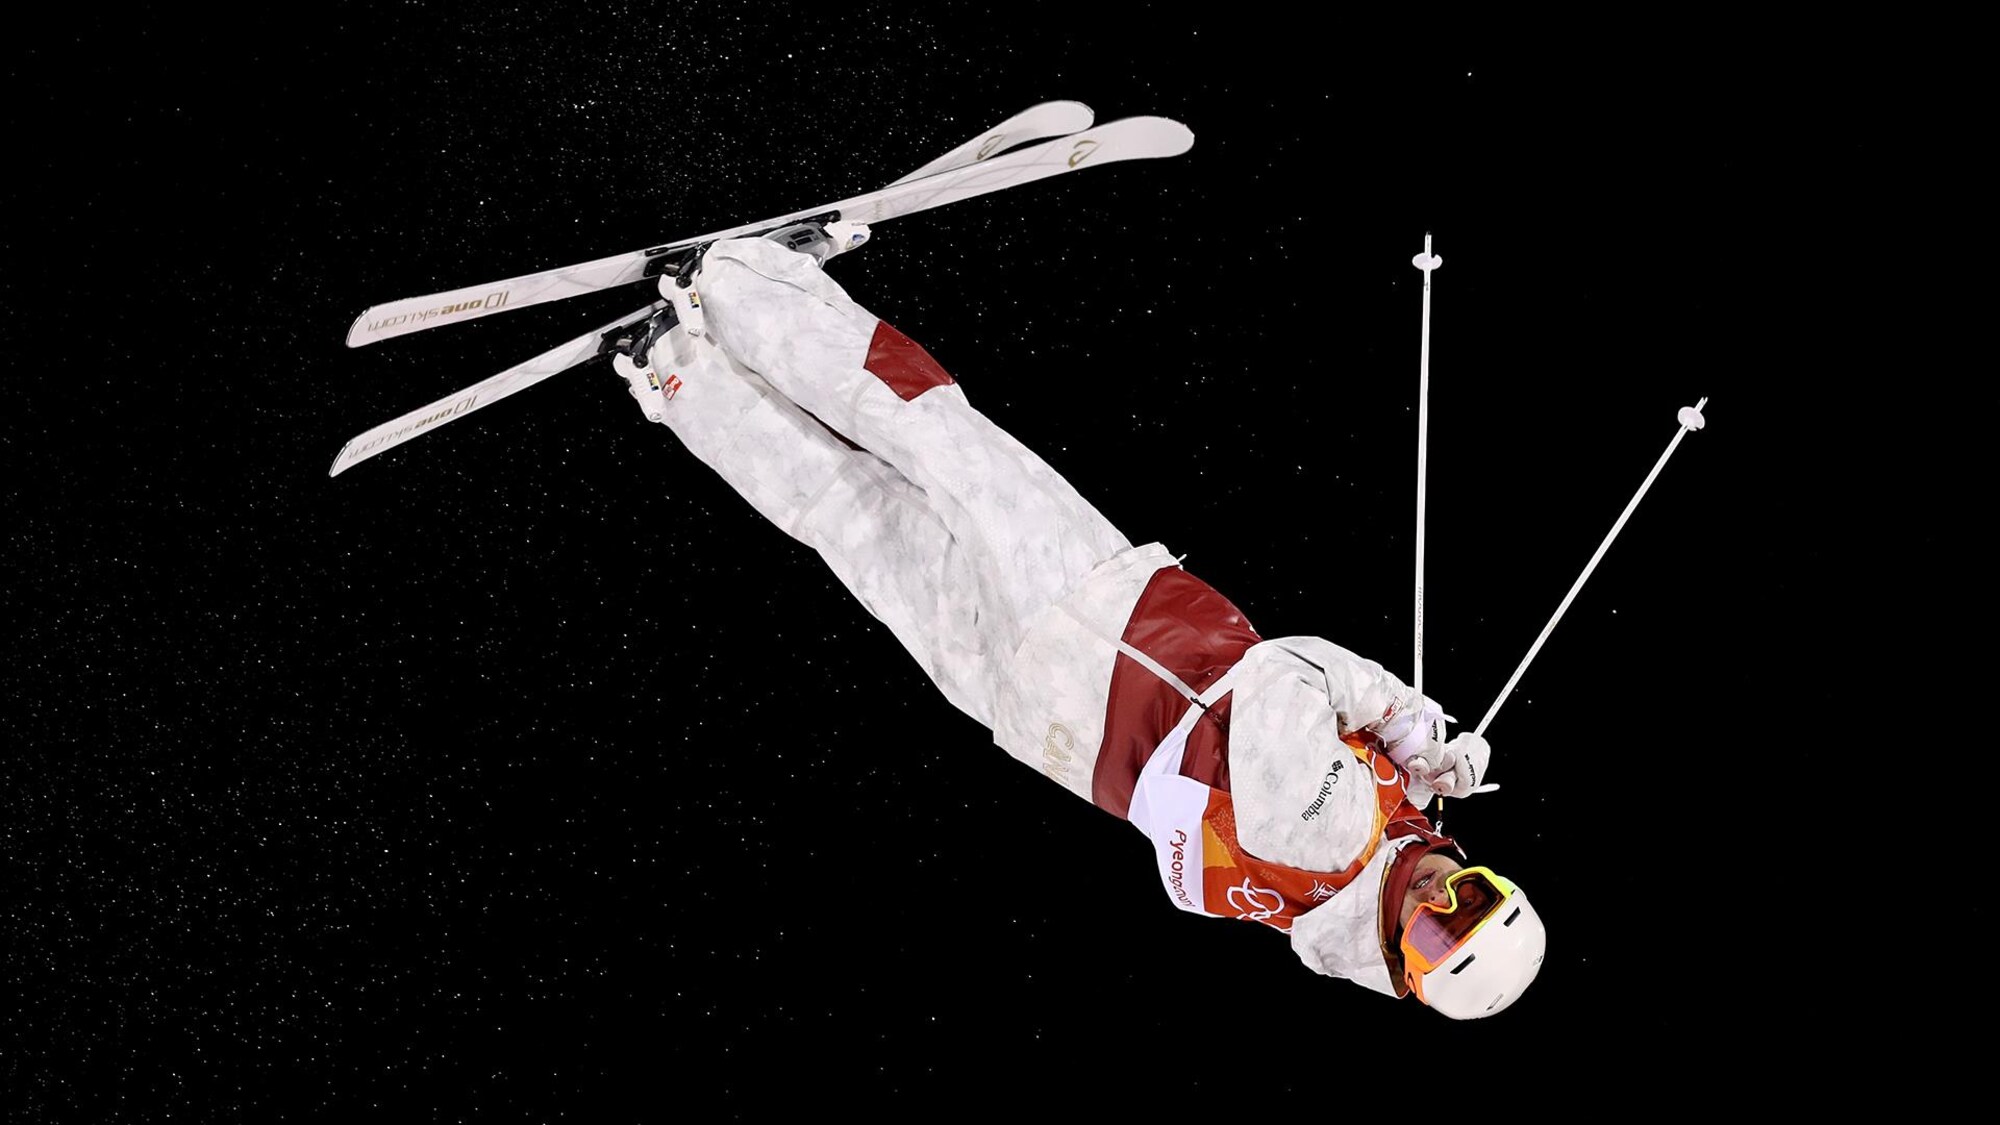 Un skieur acrobatique effectue un saut pendant une descente.